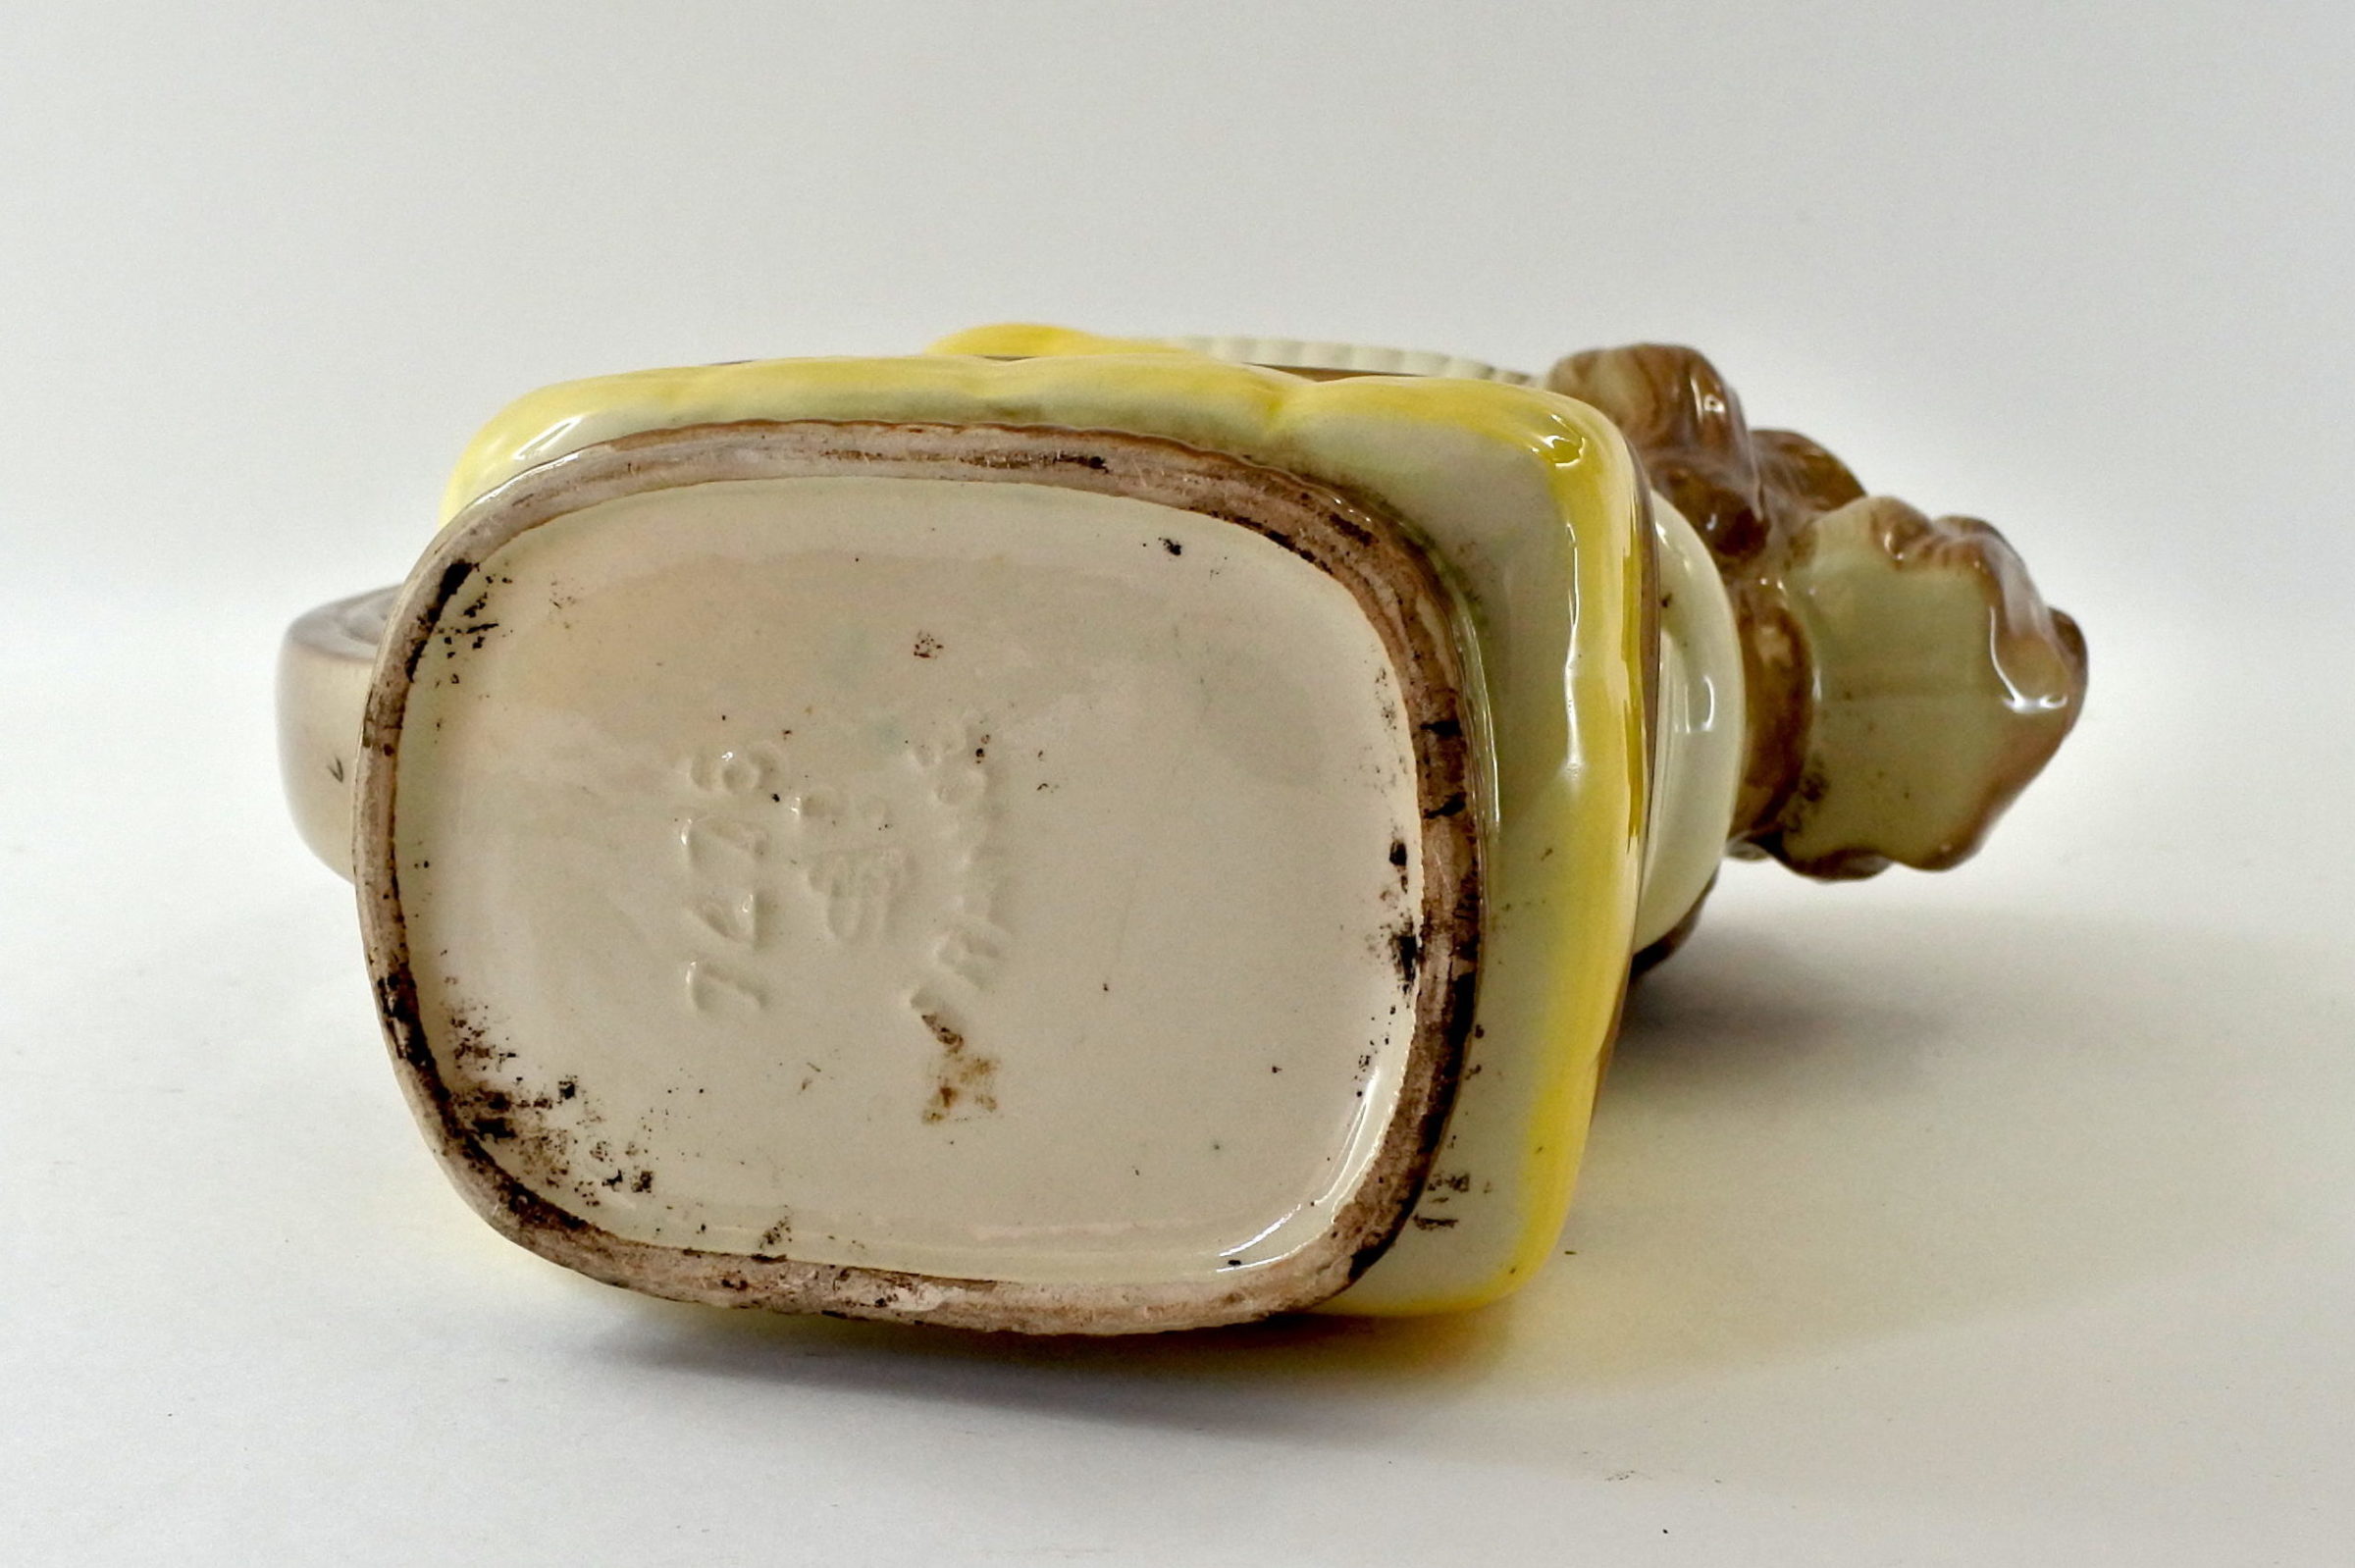 Brocca in ceramica barbotine a forma di cane che esce dal cestino - 6